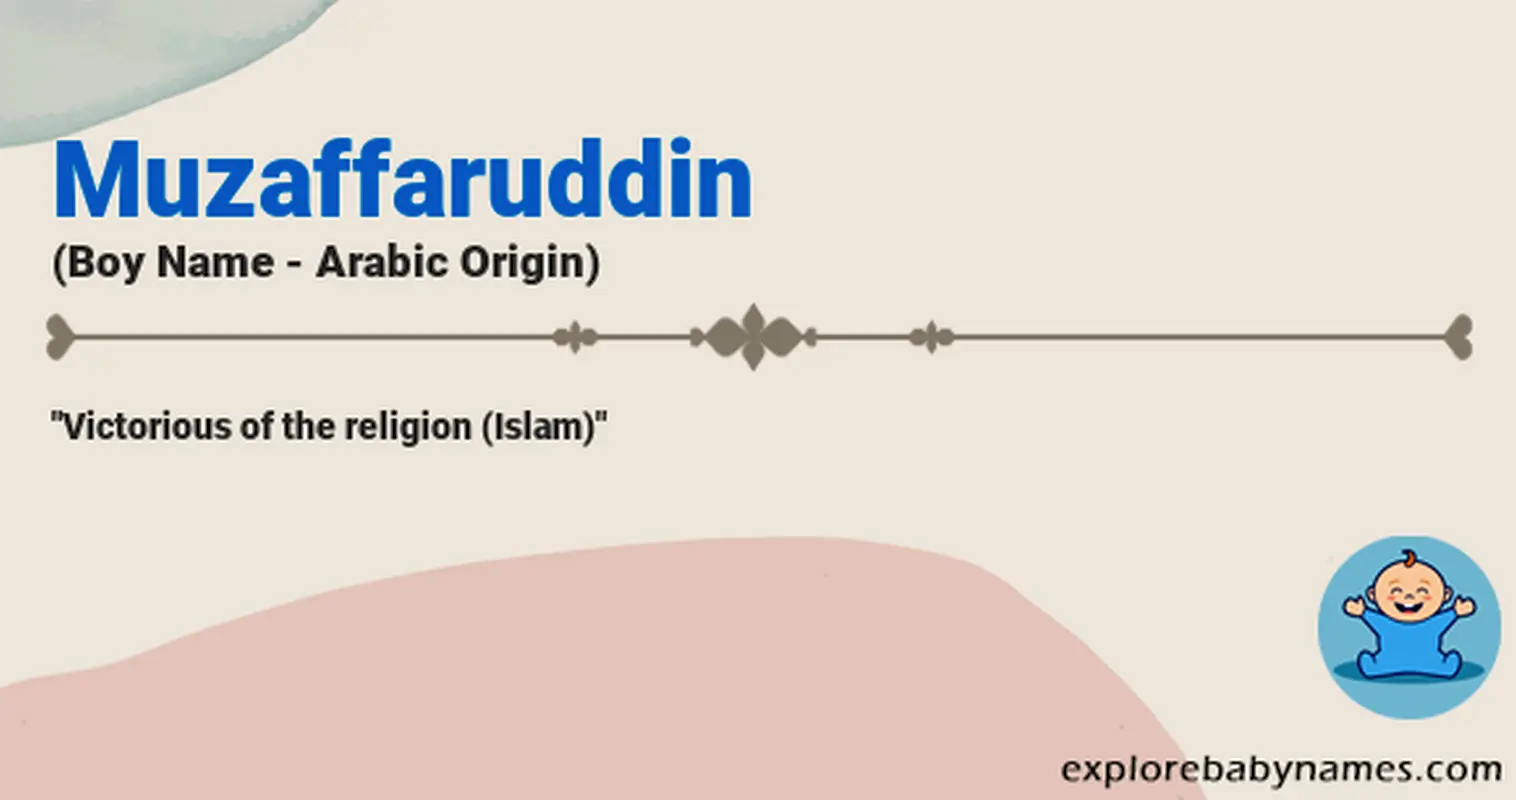 Meaning of Muzaffaruddin